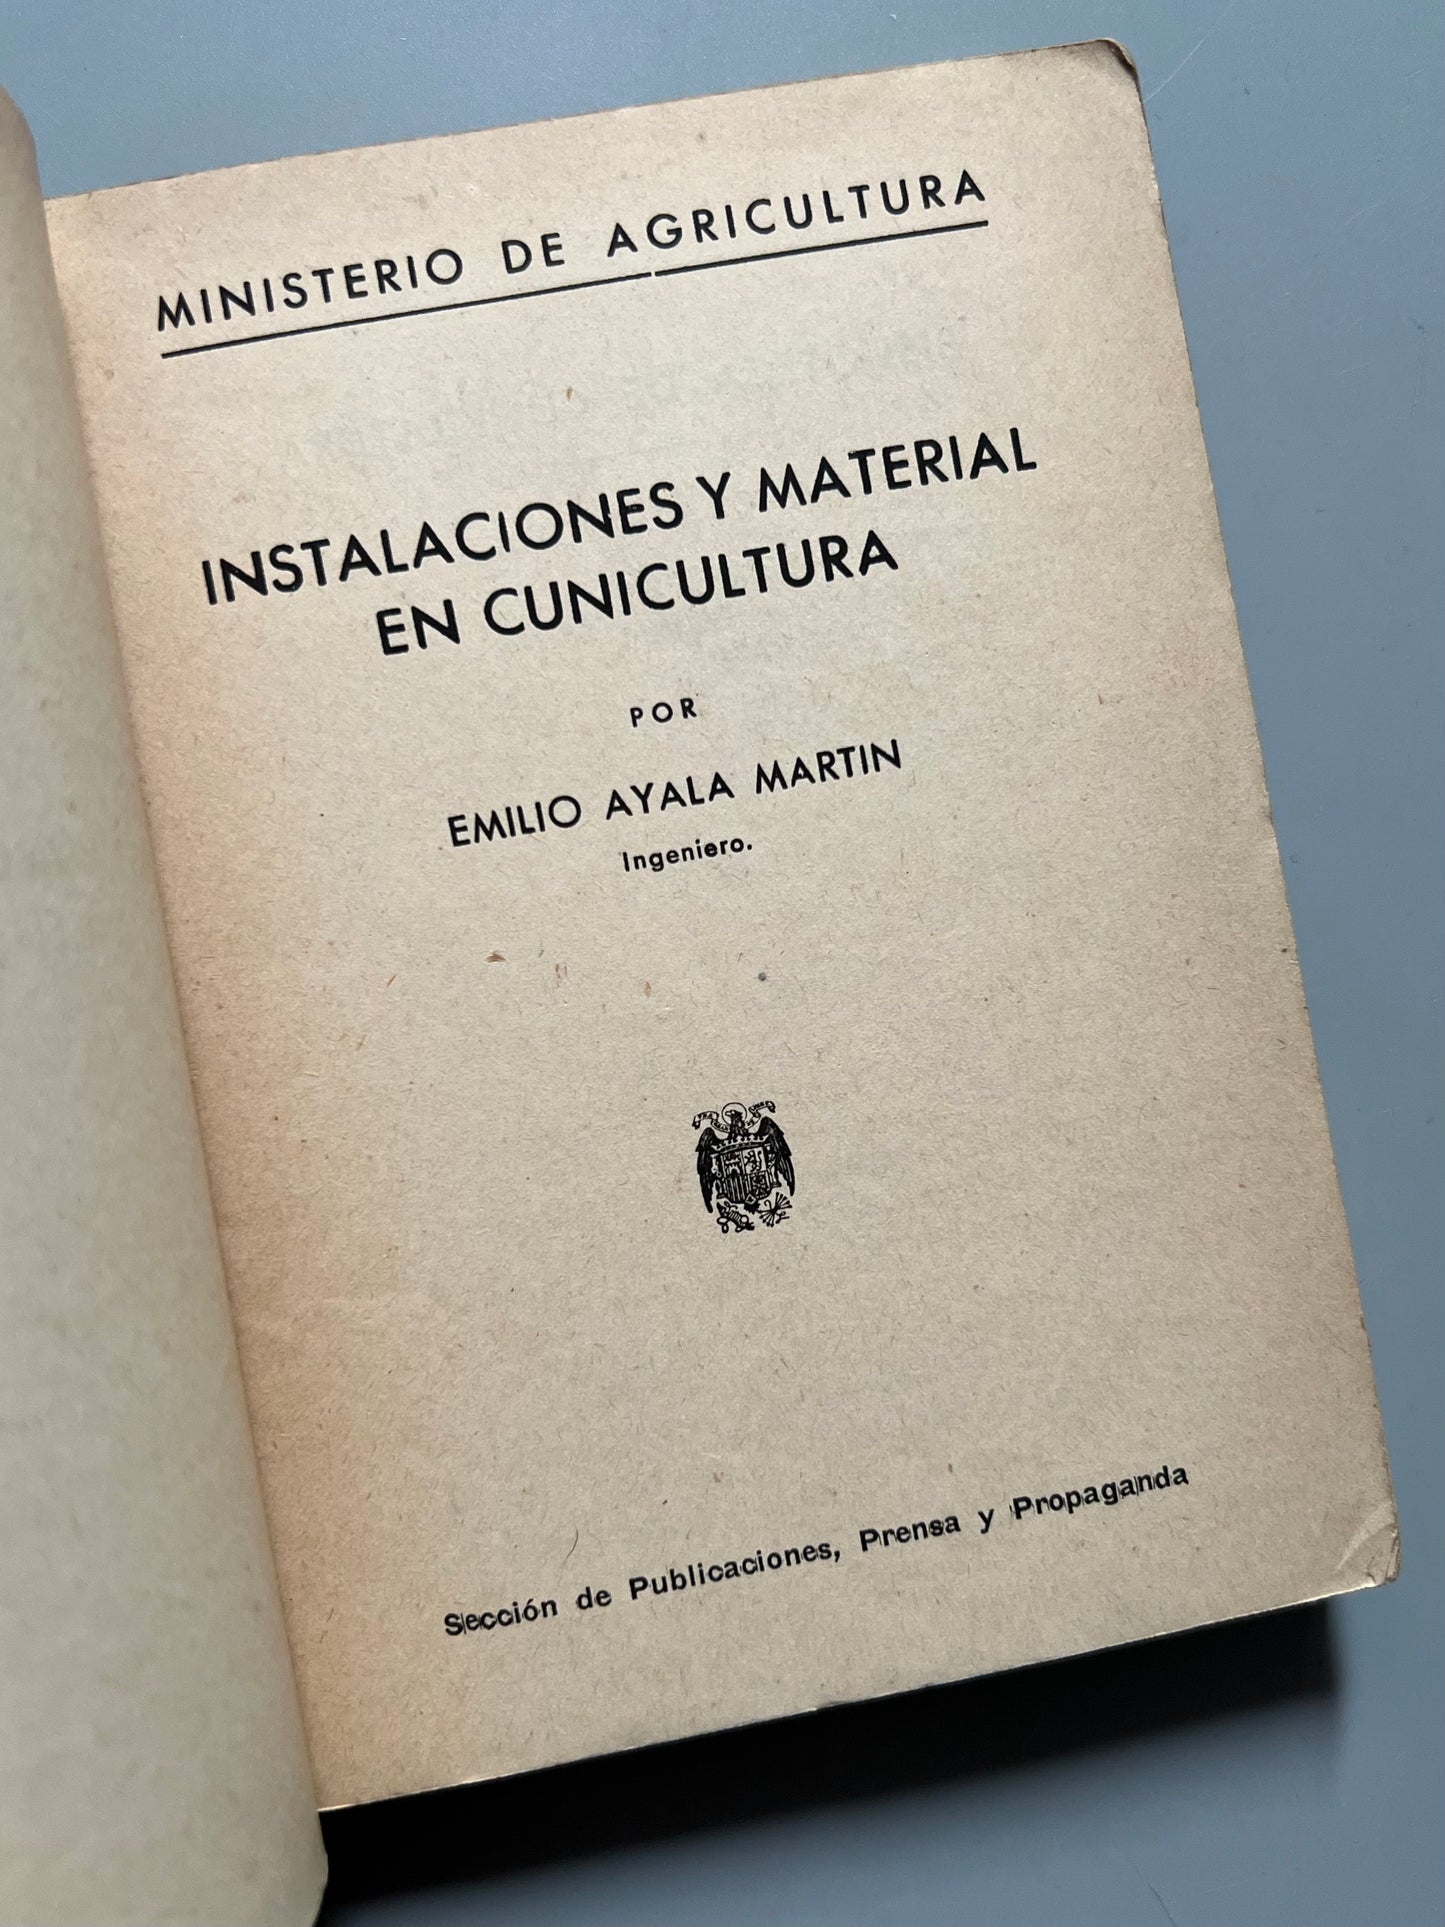 Instalaciones y material en cunicultura, Emilio Ayala Martín - Ministerio de Agricultura, ca. 1948